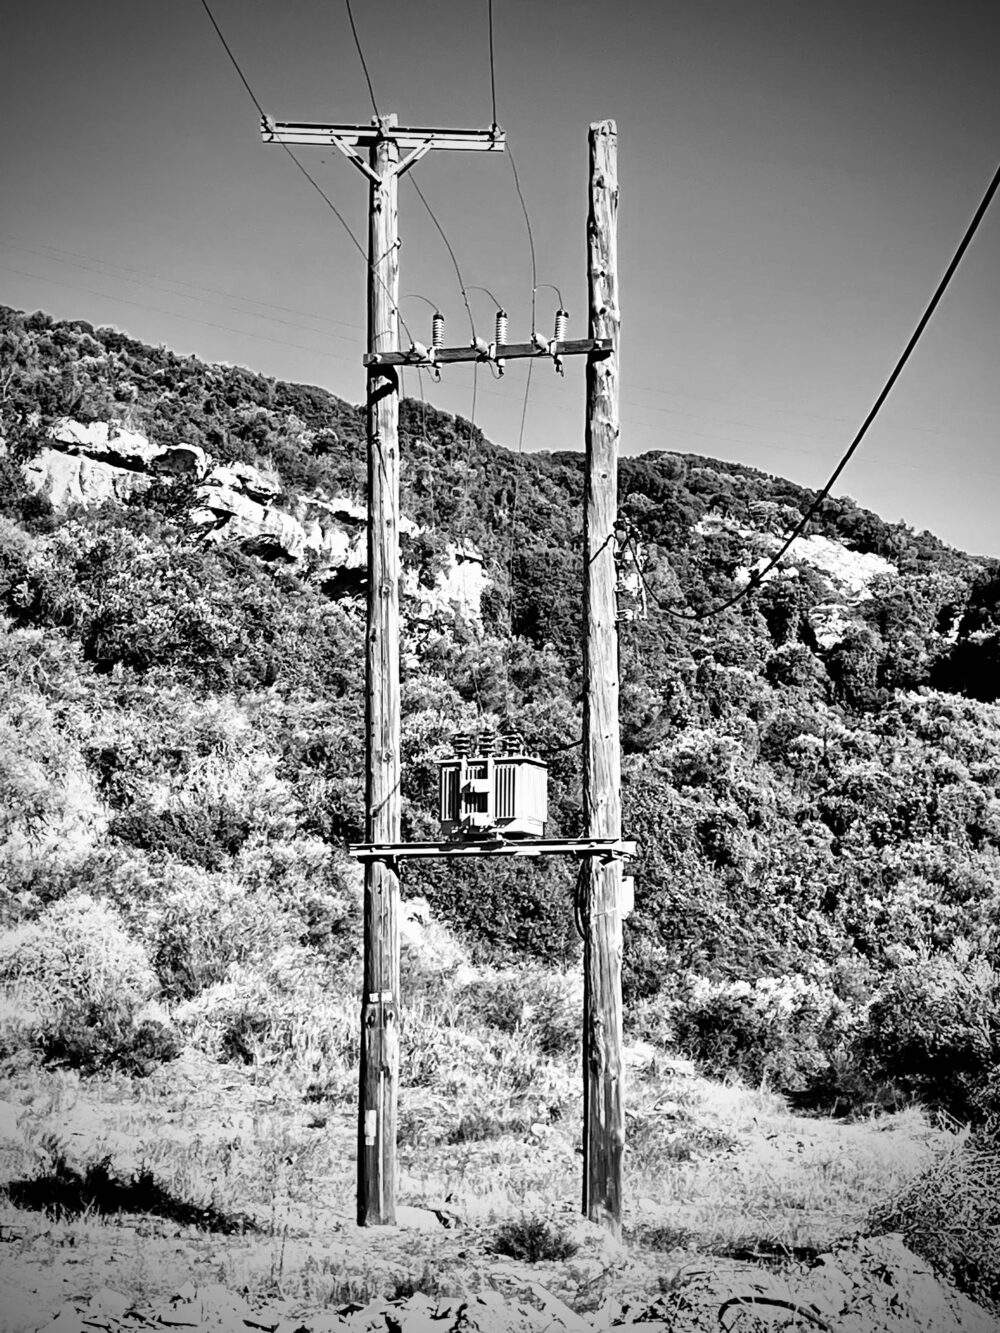 Strommasten in Griechenland, Chania, Kissamos, karge Landschaft